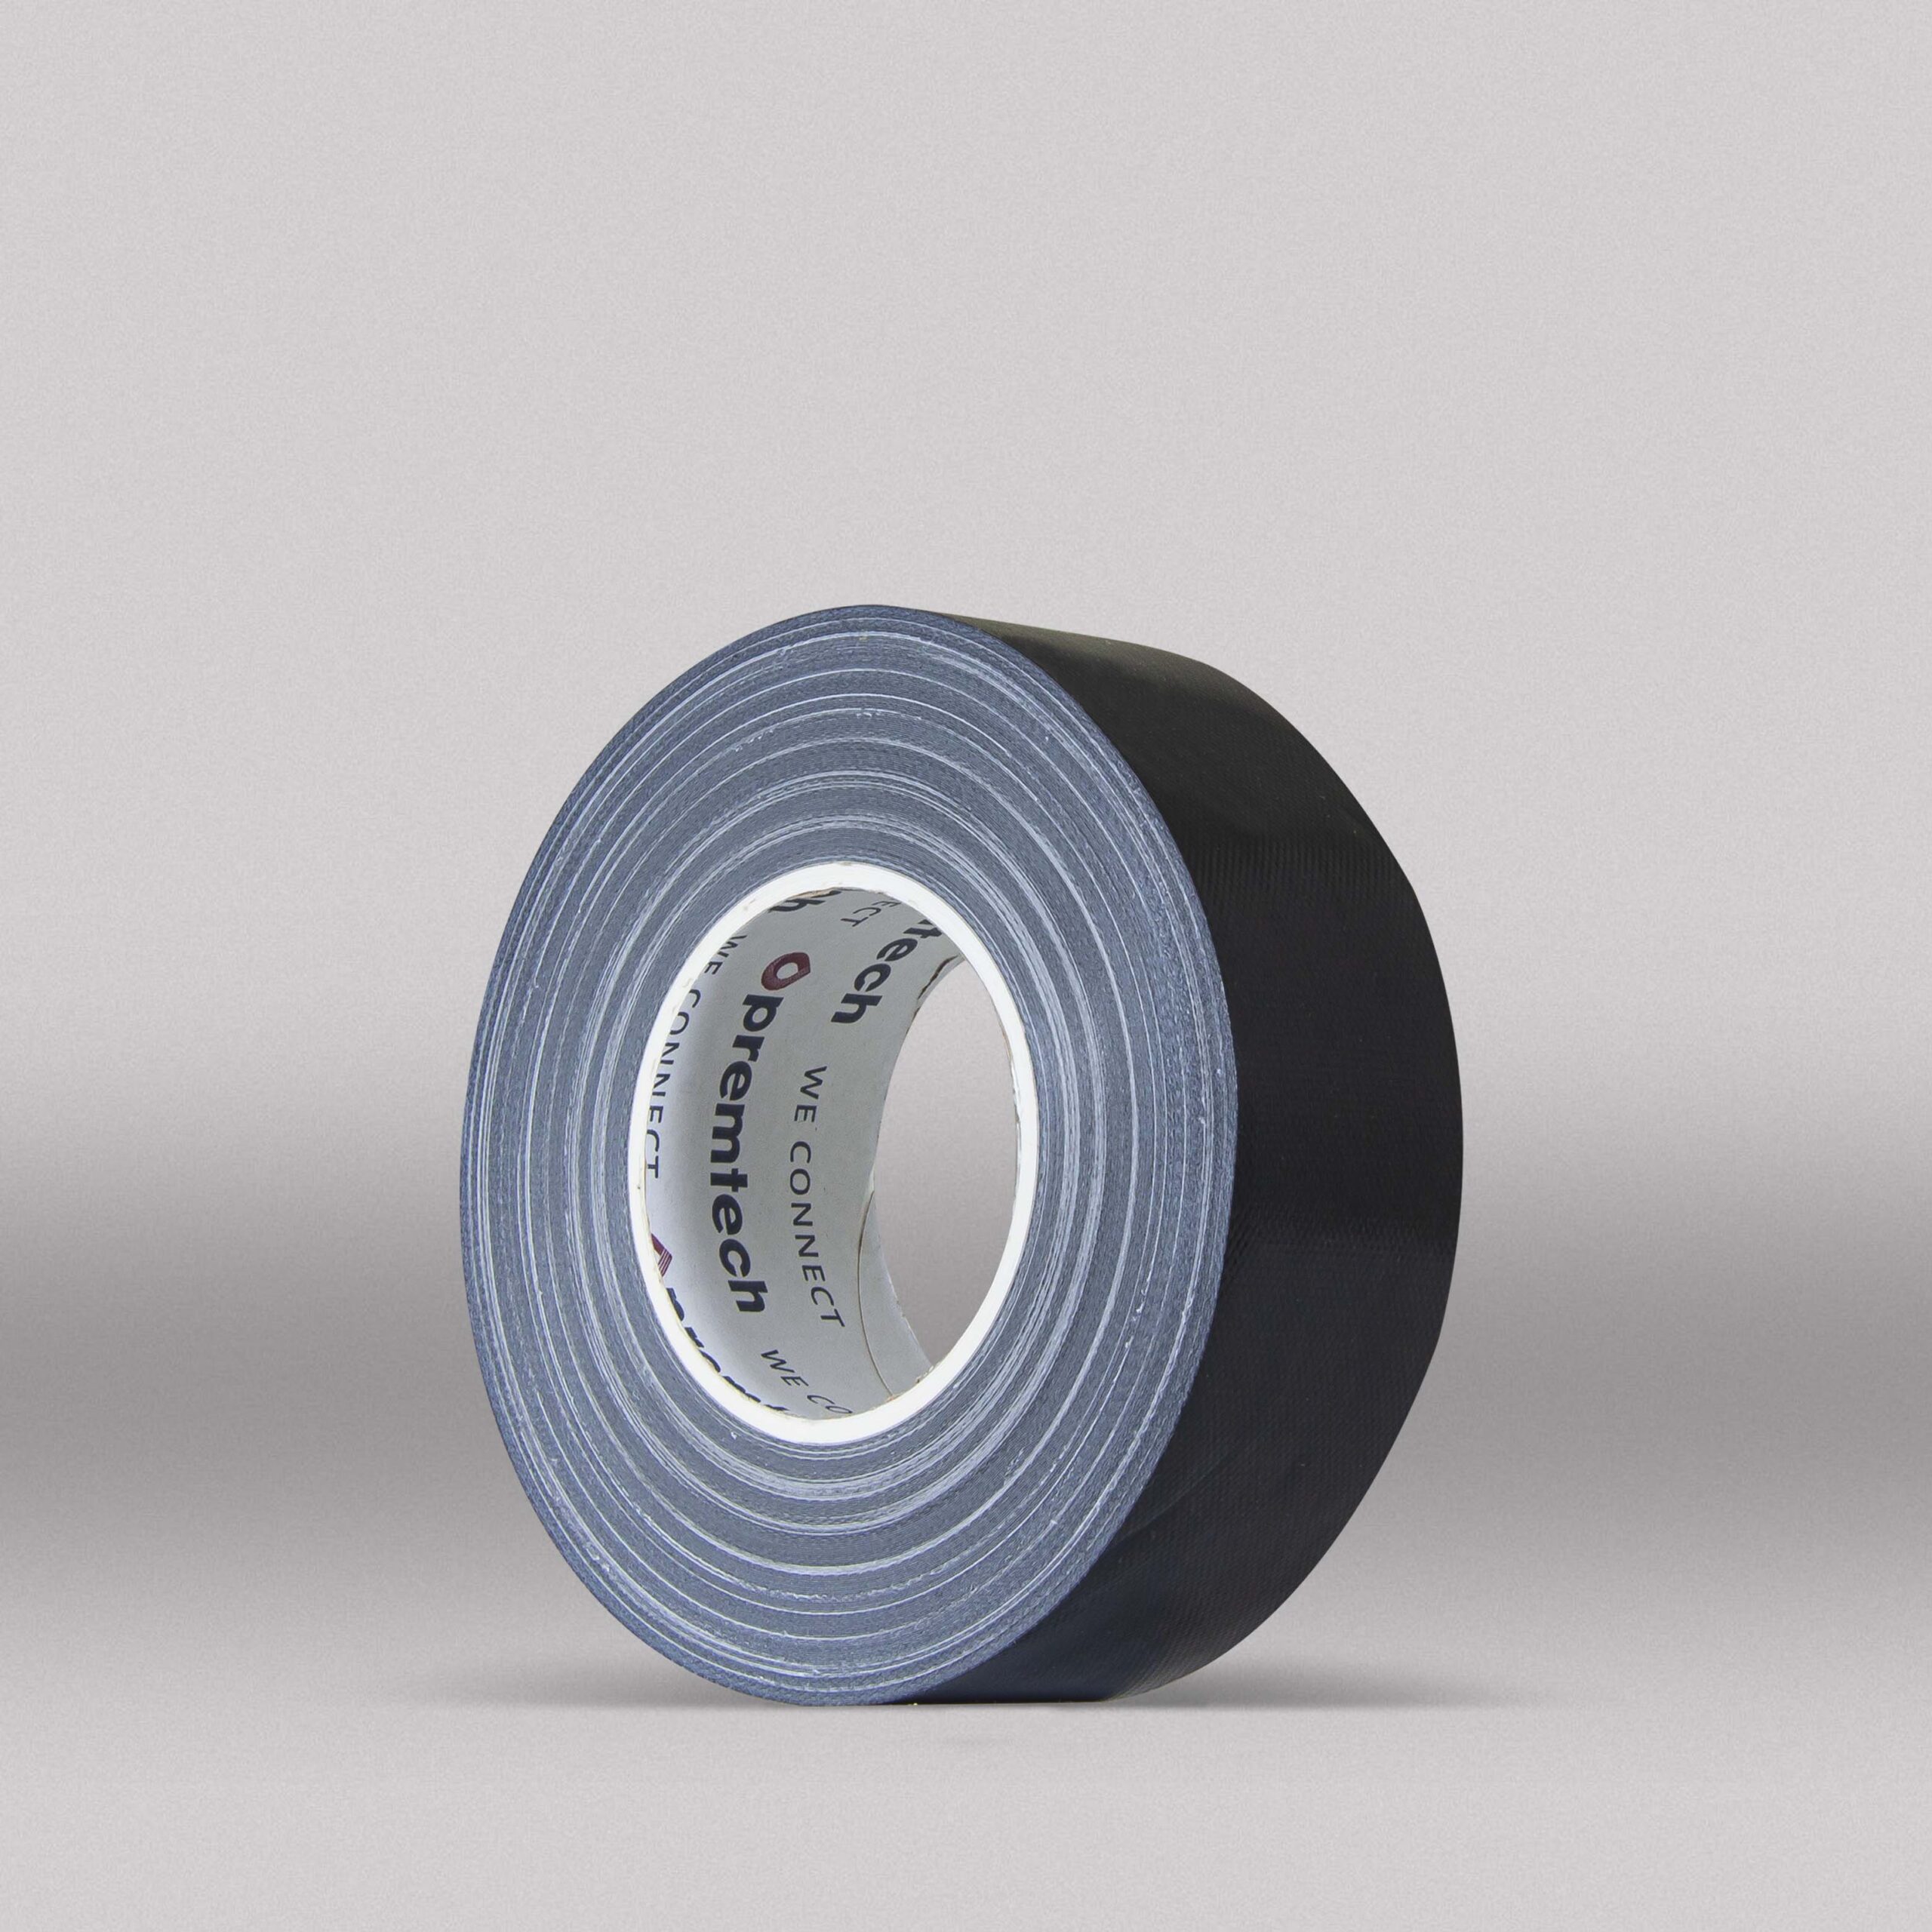 Peave Terminologie Bereid Waterproof Tape - Waterbestendige duct tape!